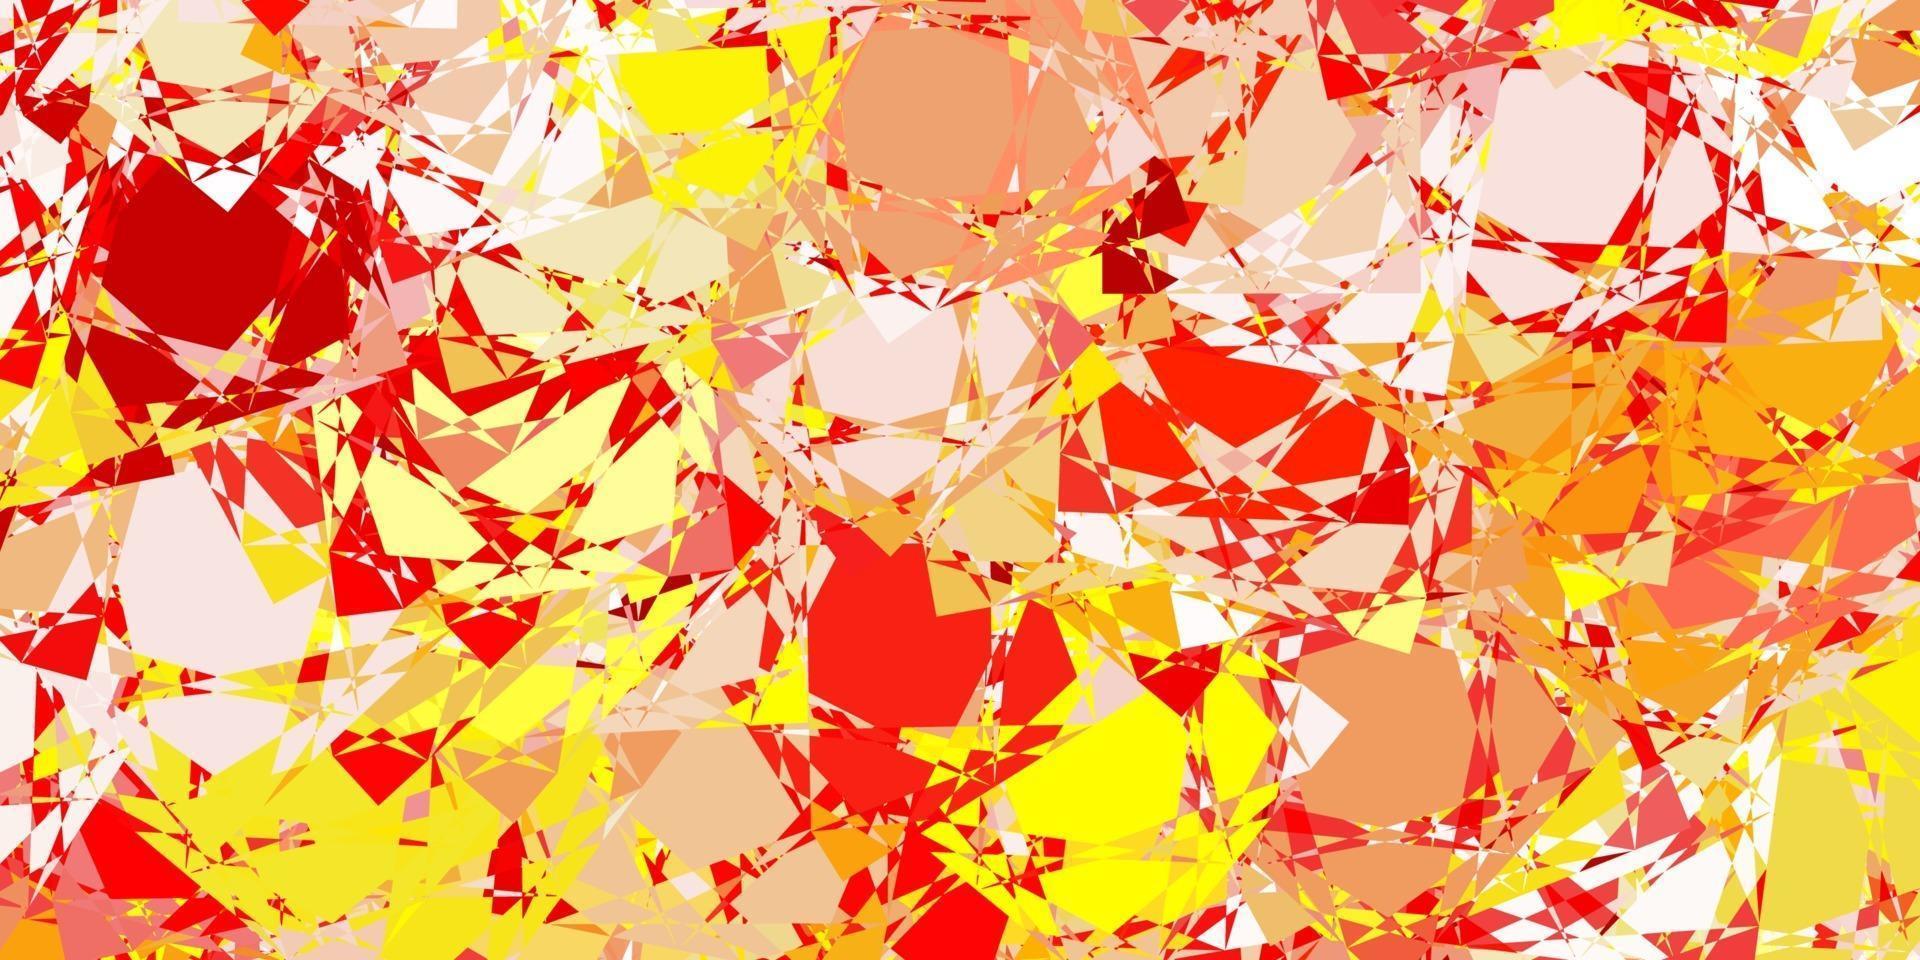 fond de vecteur rouge et jaune clair avec des formes polygonales.